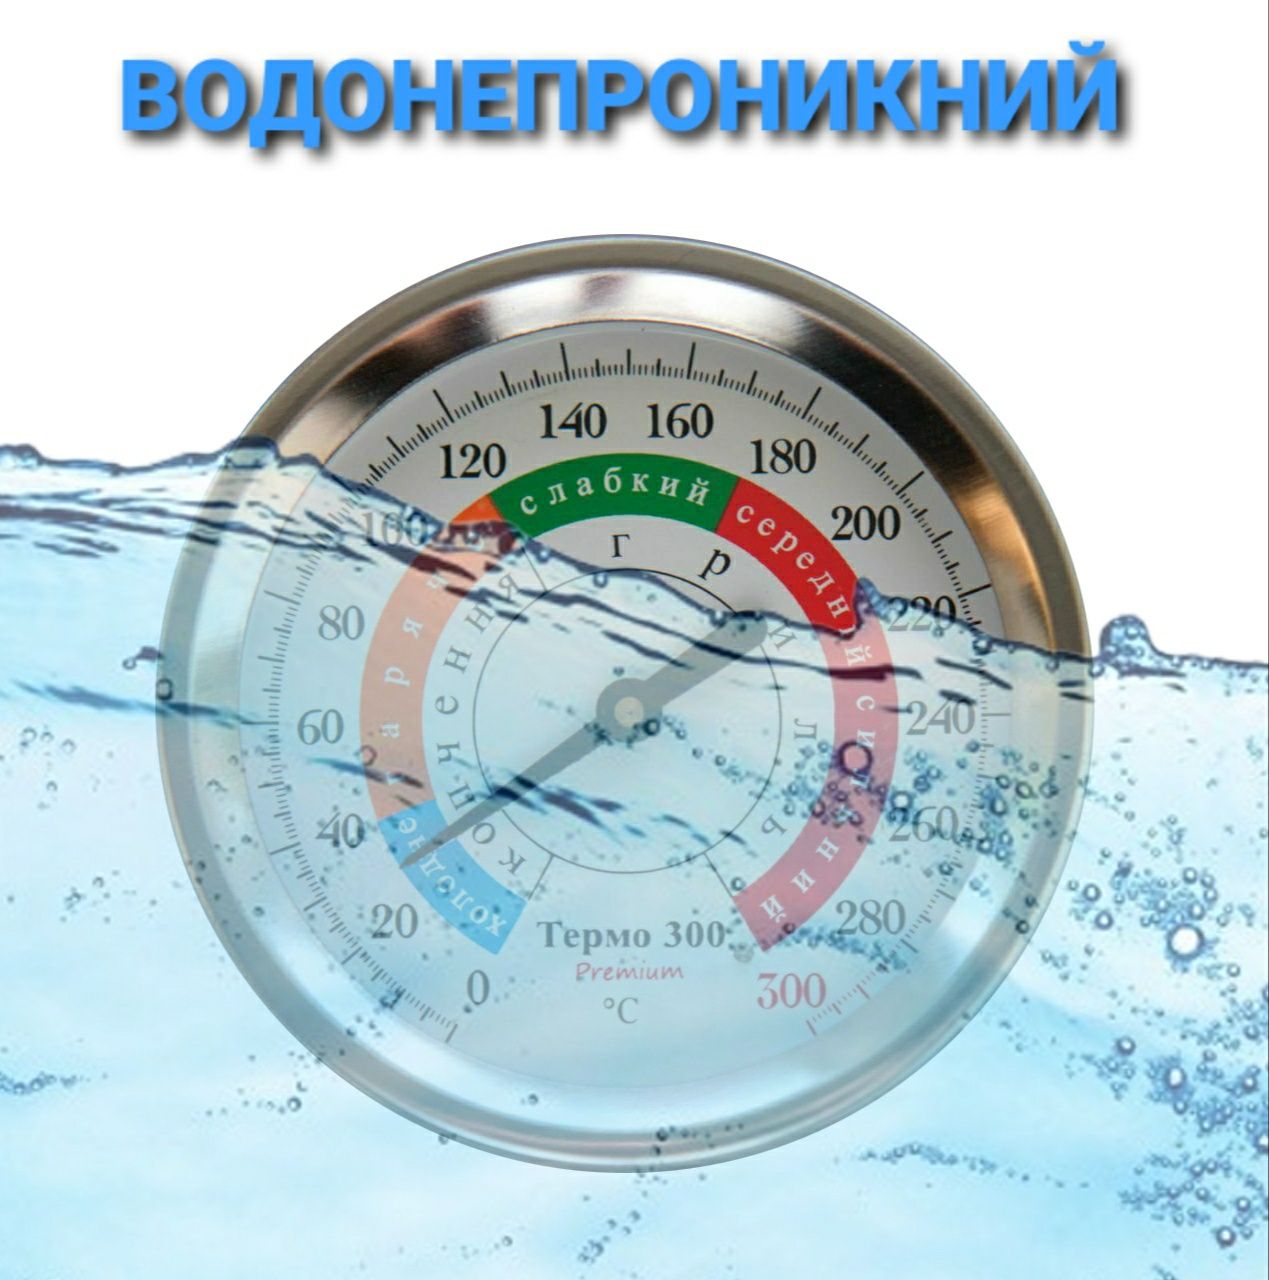 Термометр для коптильні гриля TERMO 300 Premium 0-300C Україна